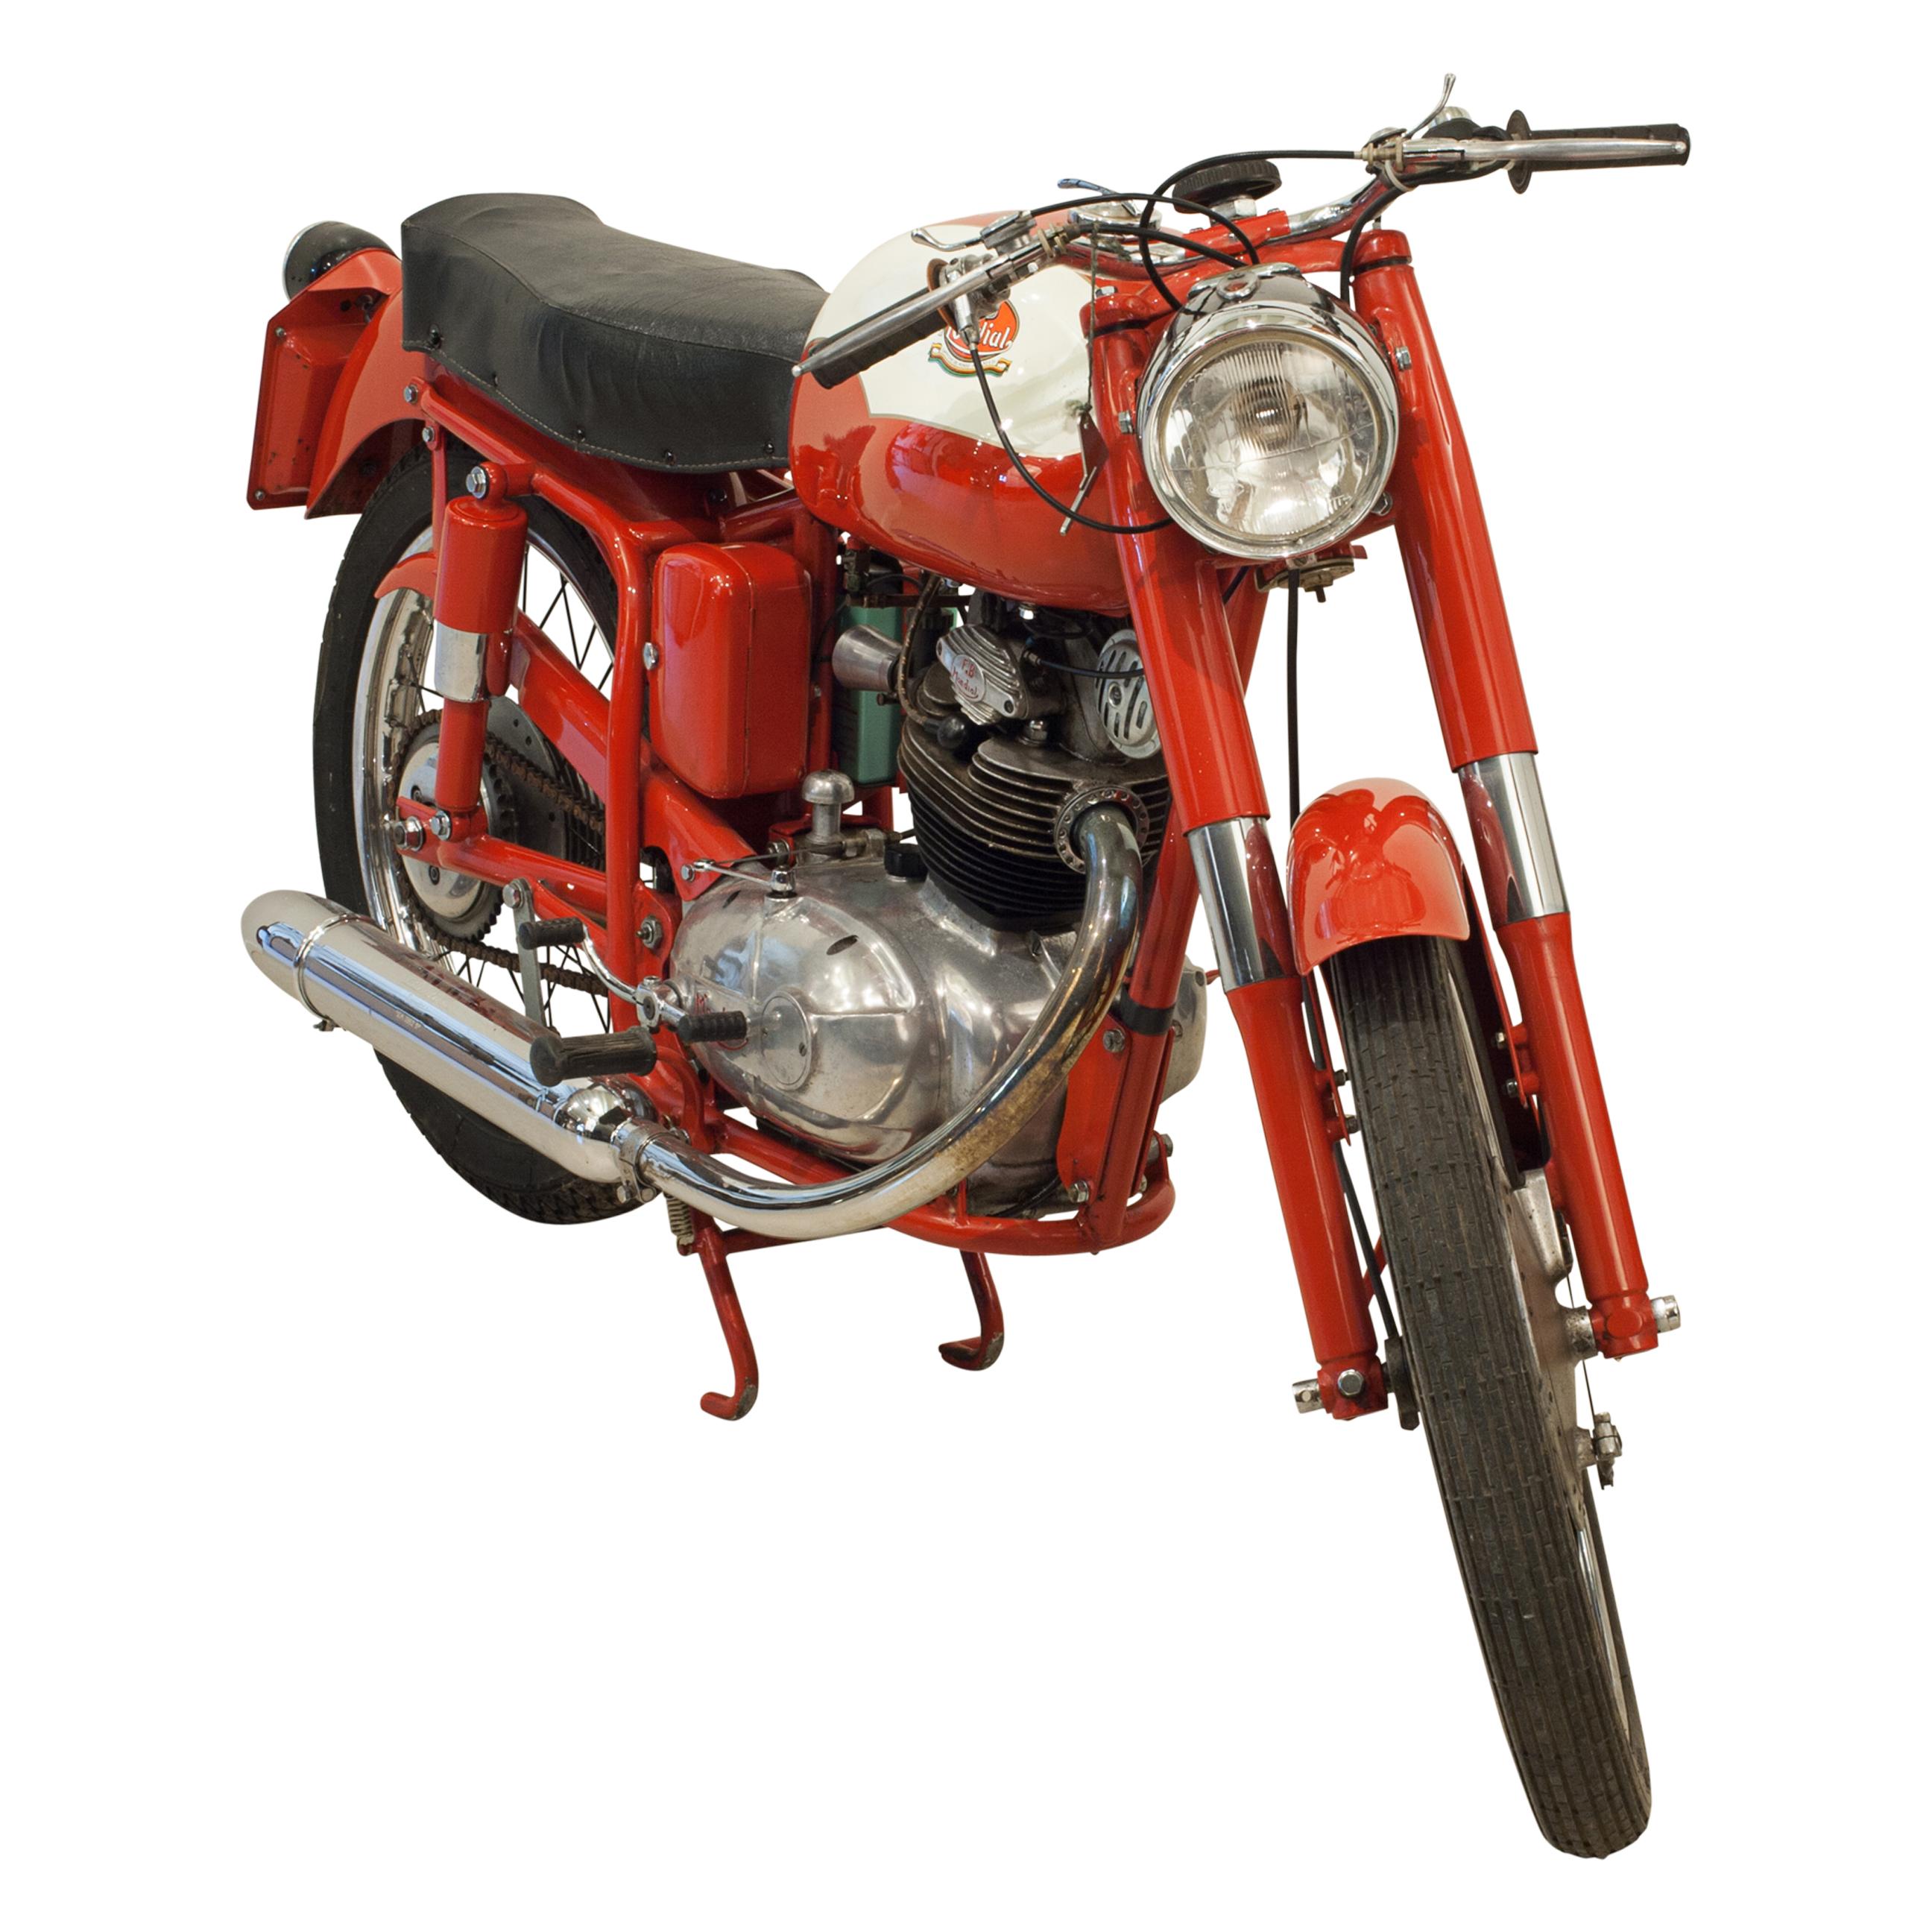 F B (Fratelli Boselli) Mondial 1960 Mondial Sprint Motorrad.
Dieses exquisit konstruierte und wunderschön gebaute 1960er Mondial Sprint-Motorrad ist unverkennbar italienisch. Er hat die passende Rahmen- und Motornummer 02277, Reg.-Nr. BSJ 784,